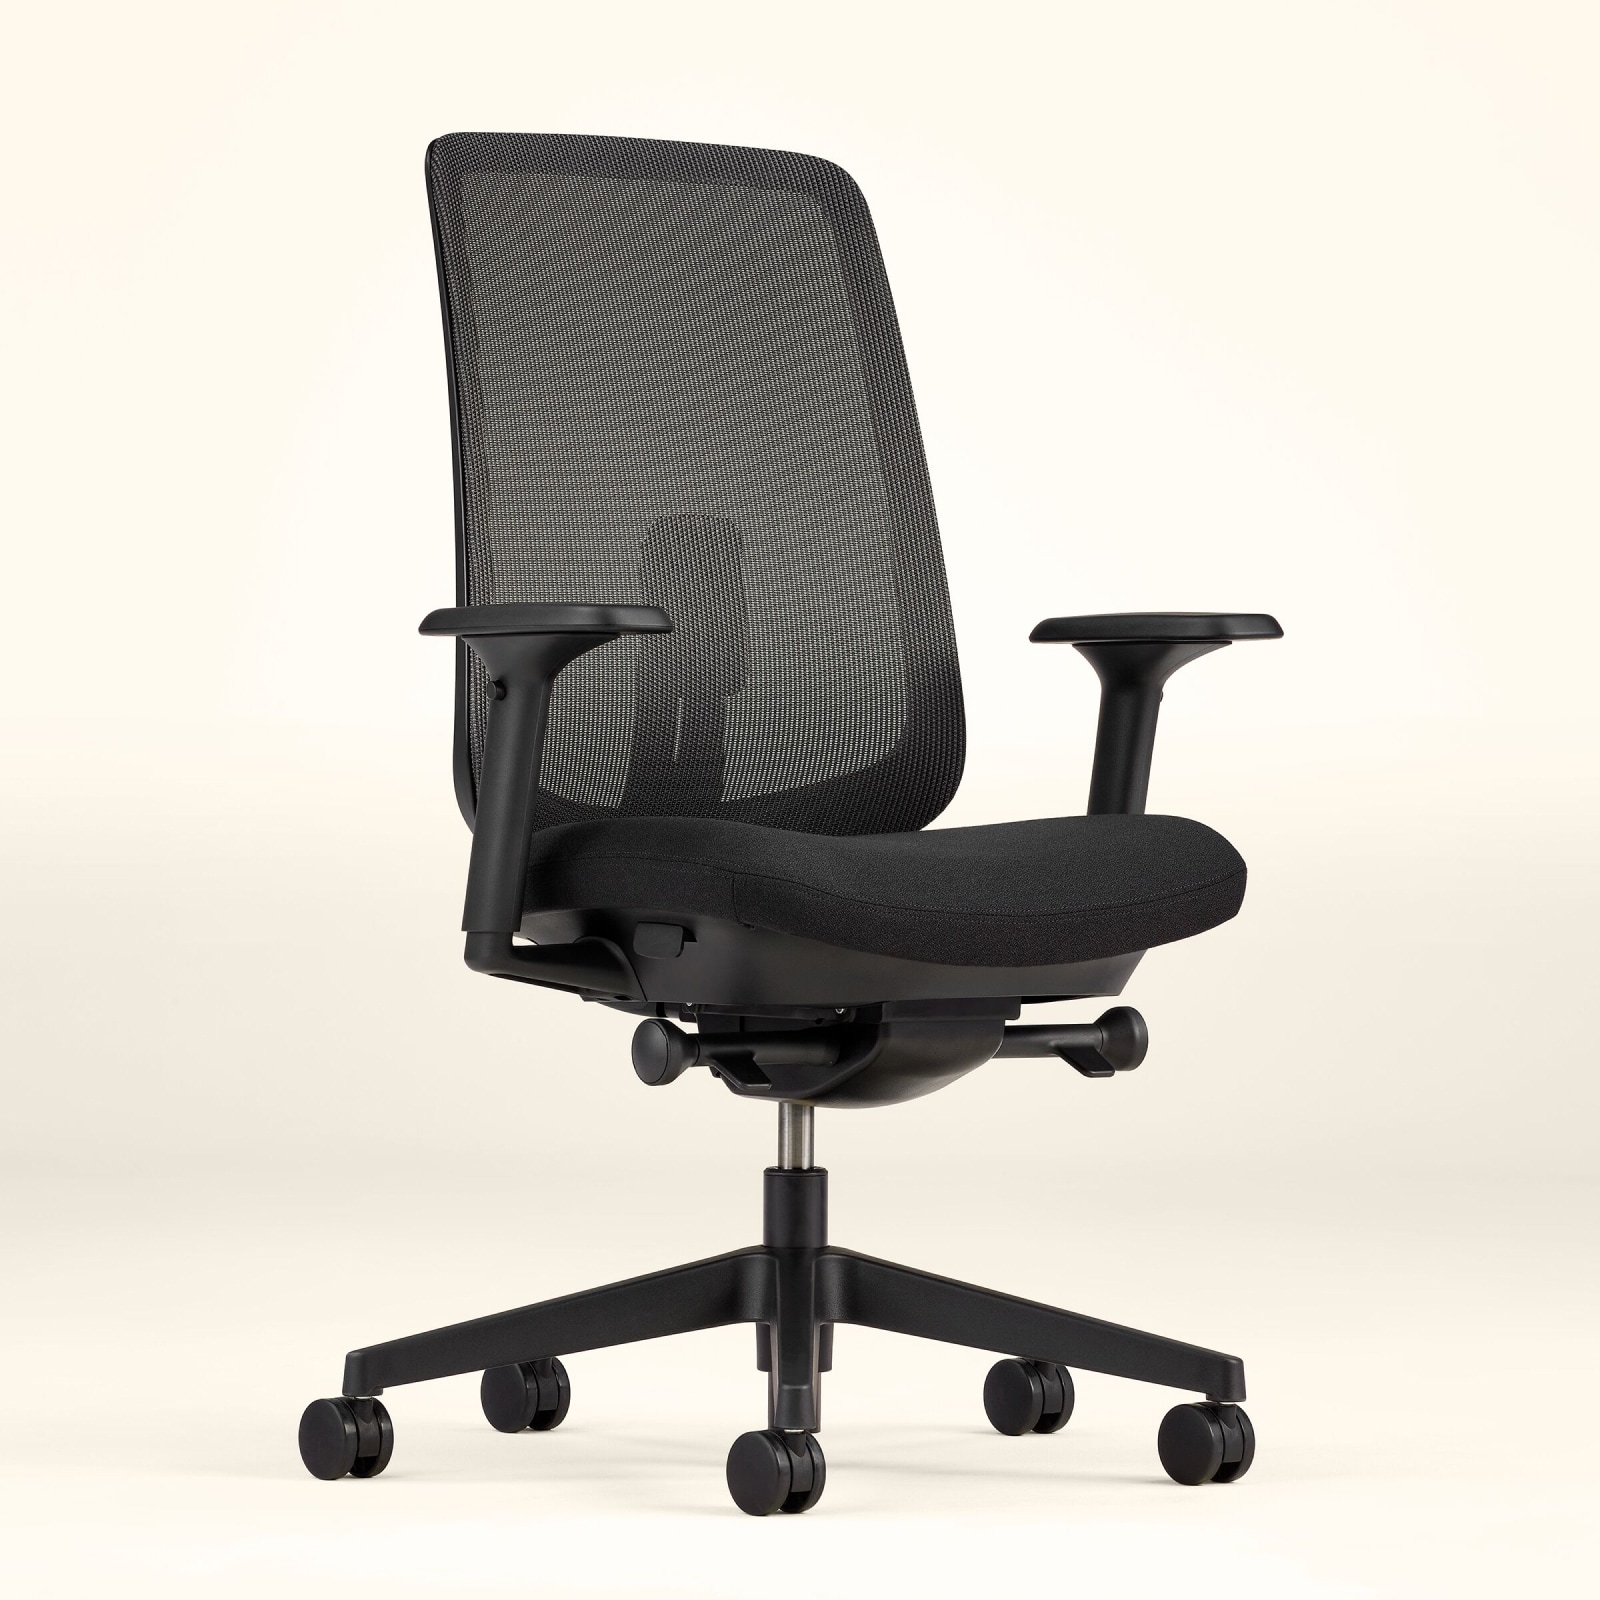 Ein Verus Stuhl mit Membran-Rückenlehne, Sitzfläche und Rahmen in Schwarz vor einem blassgelben Hintergrund, im schrägen Winkel betrachtet.